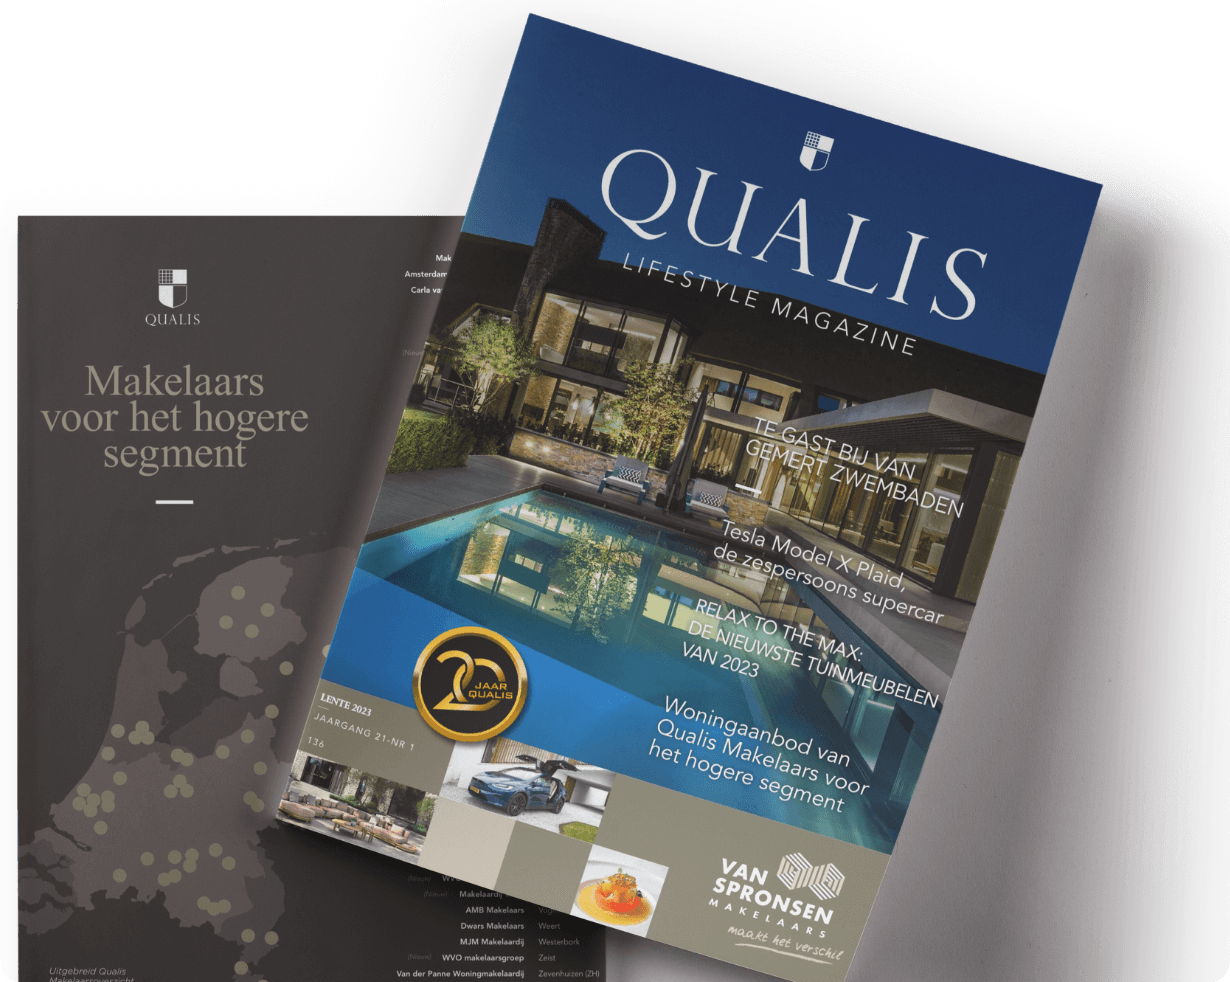 Qualis magazine